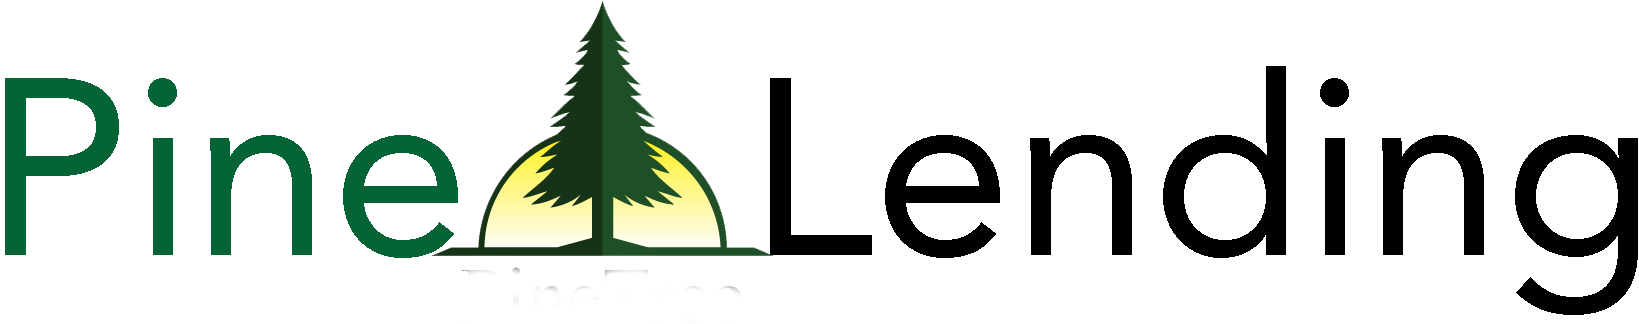 Pine Lending Logo